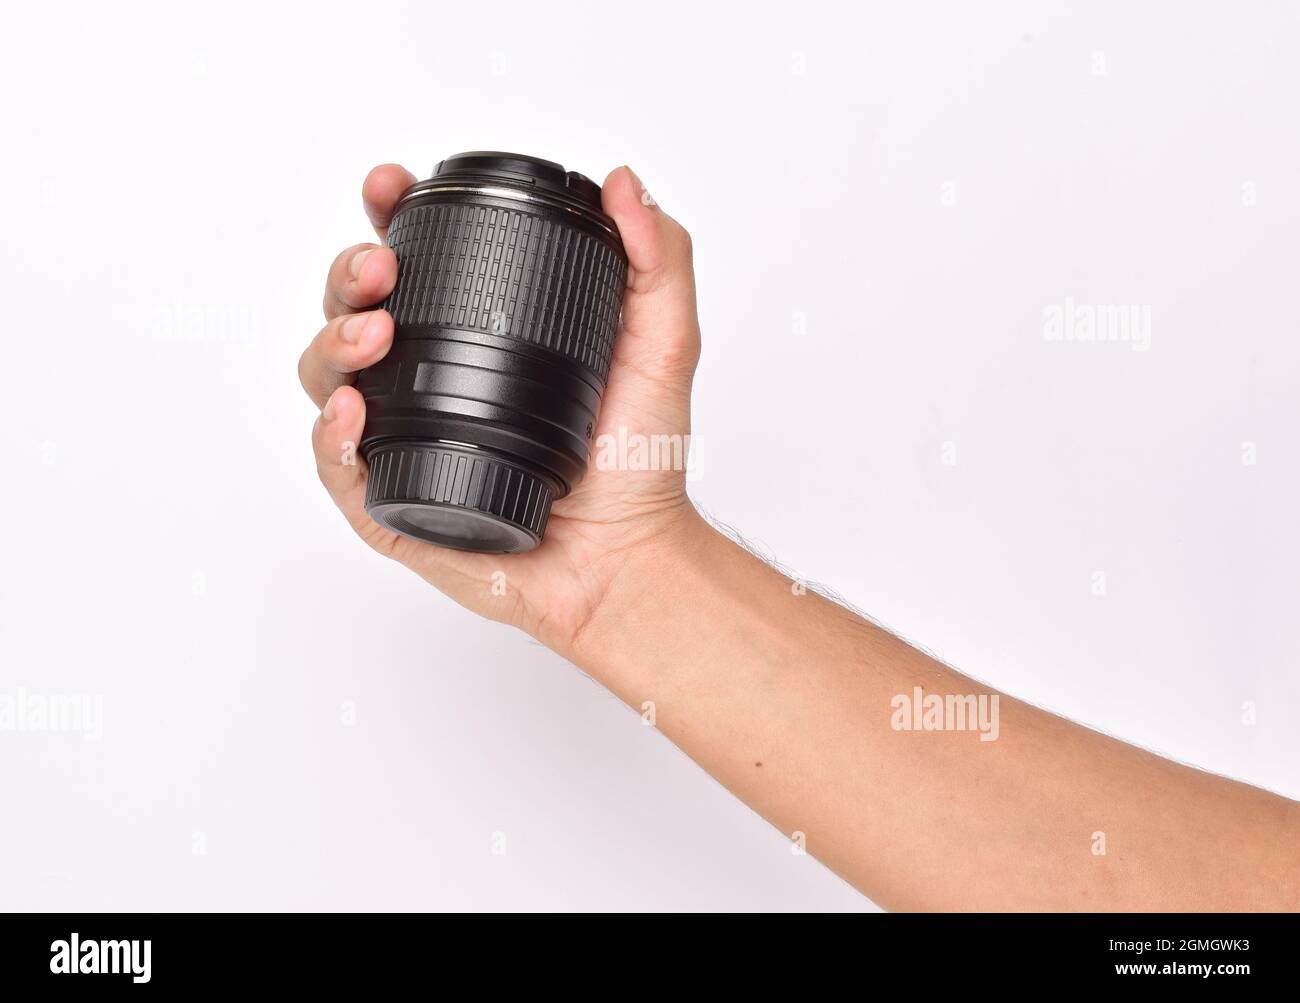 Lente de cámara aislada en fondo blanco Foto de stock